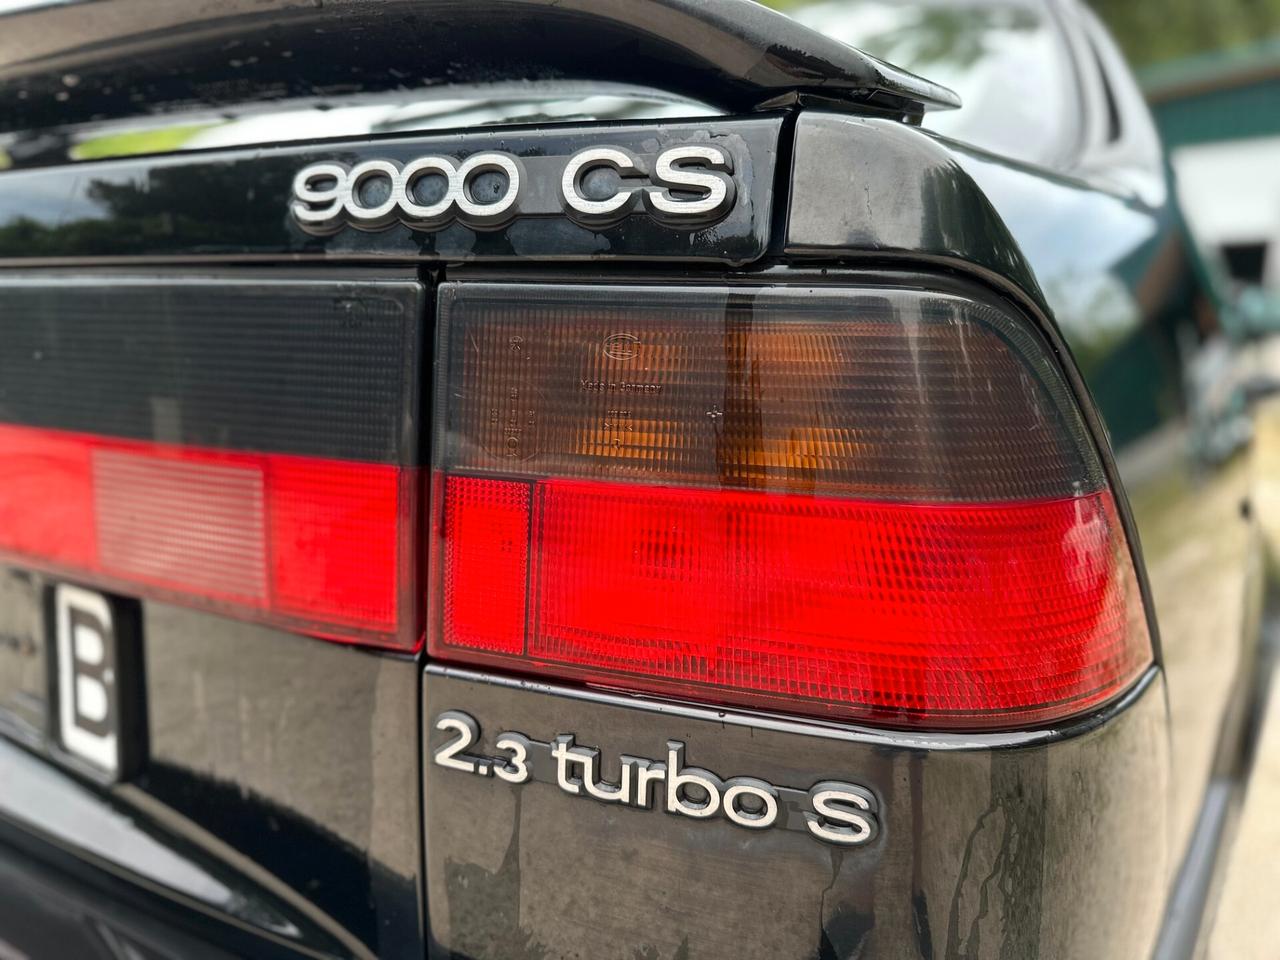 Saab 9000 CS 2.3 turbo S